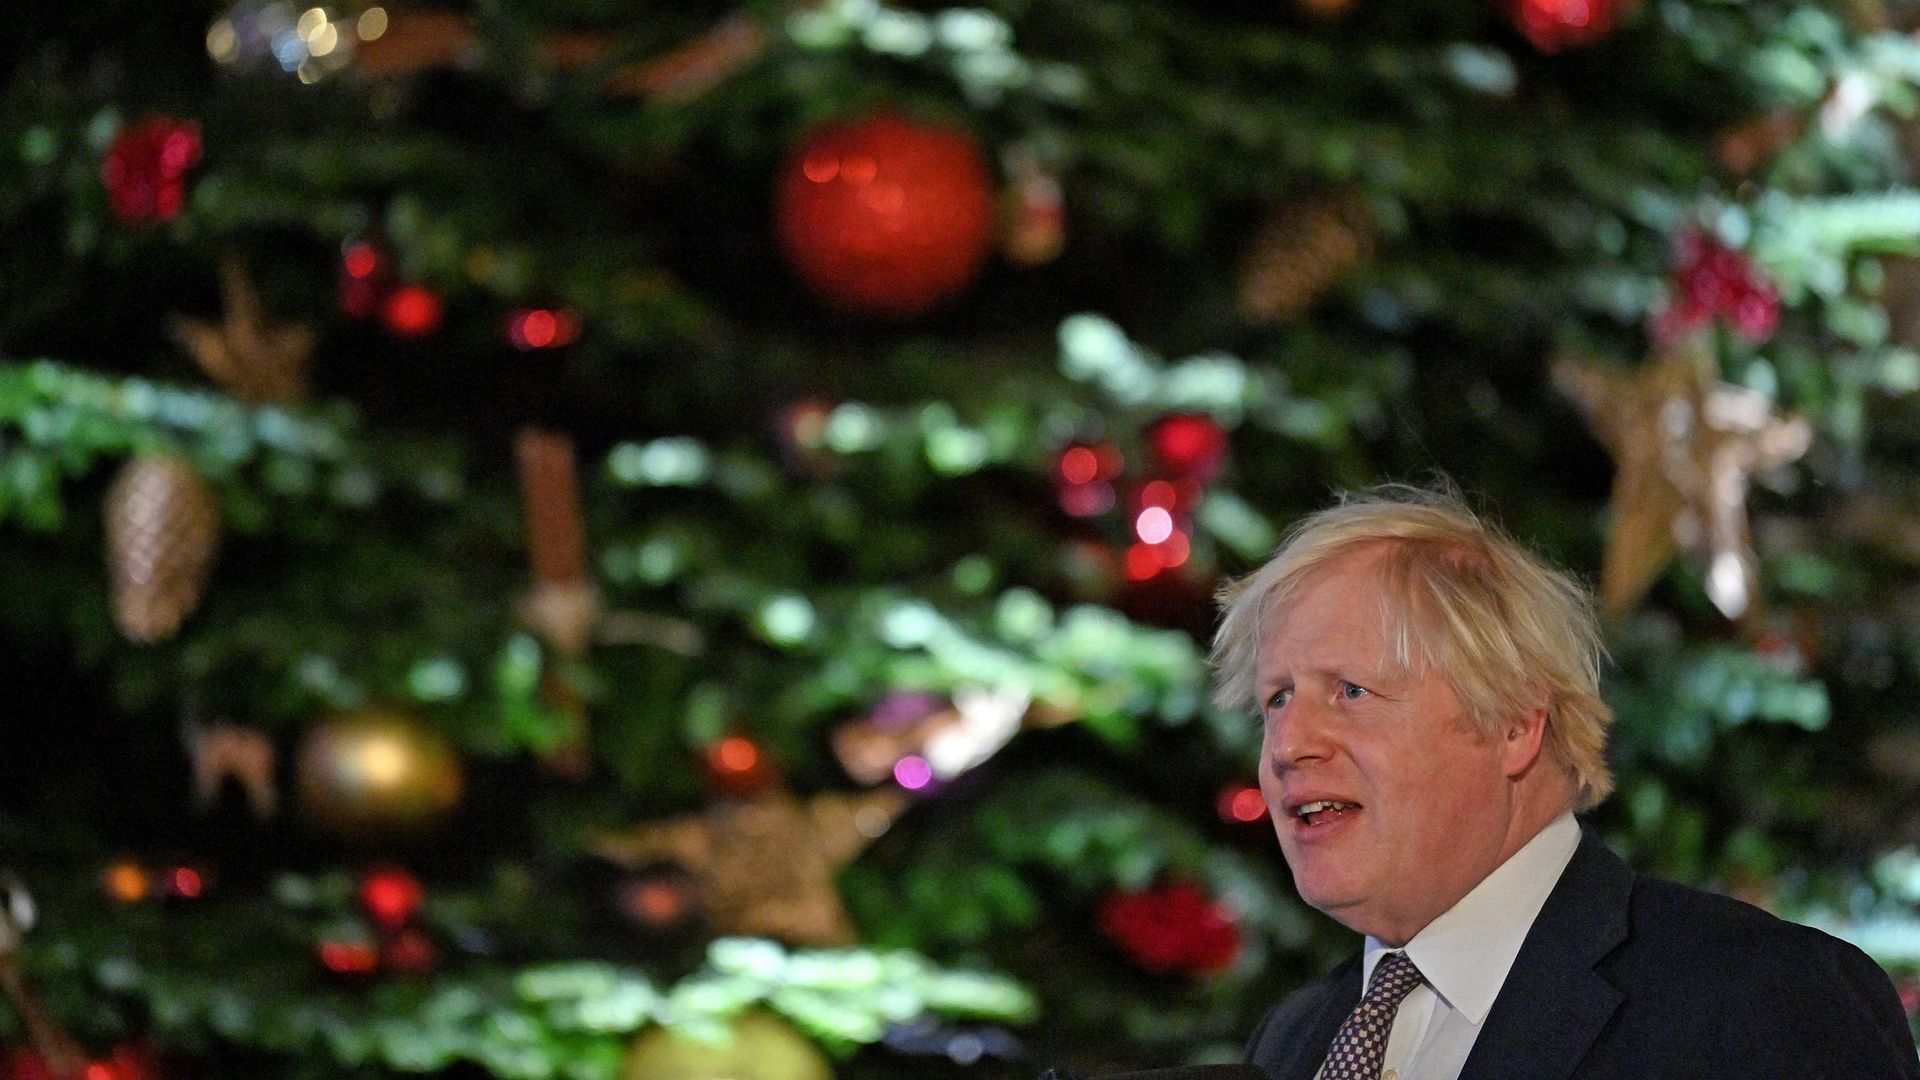 Le "Partygate" pourrait saper les mesures sanitaires annoncées par Boris Johnson